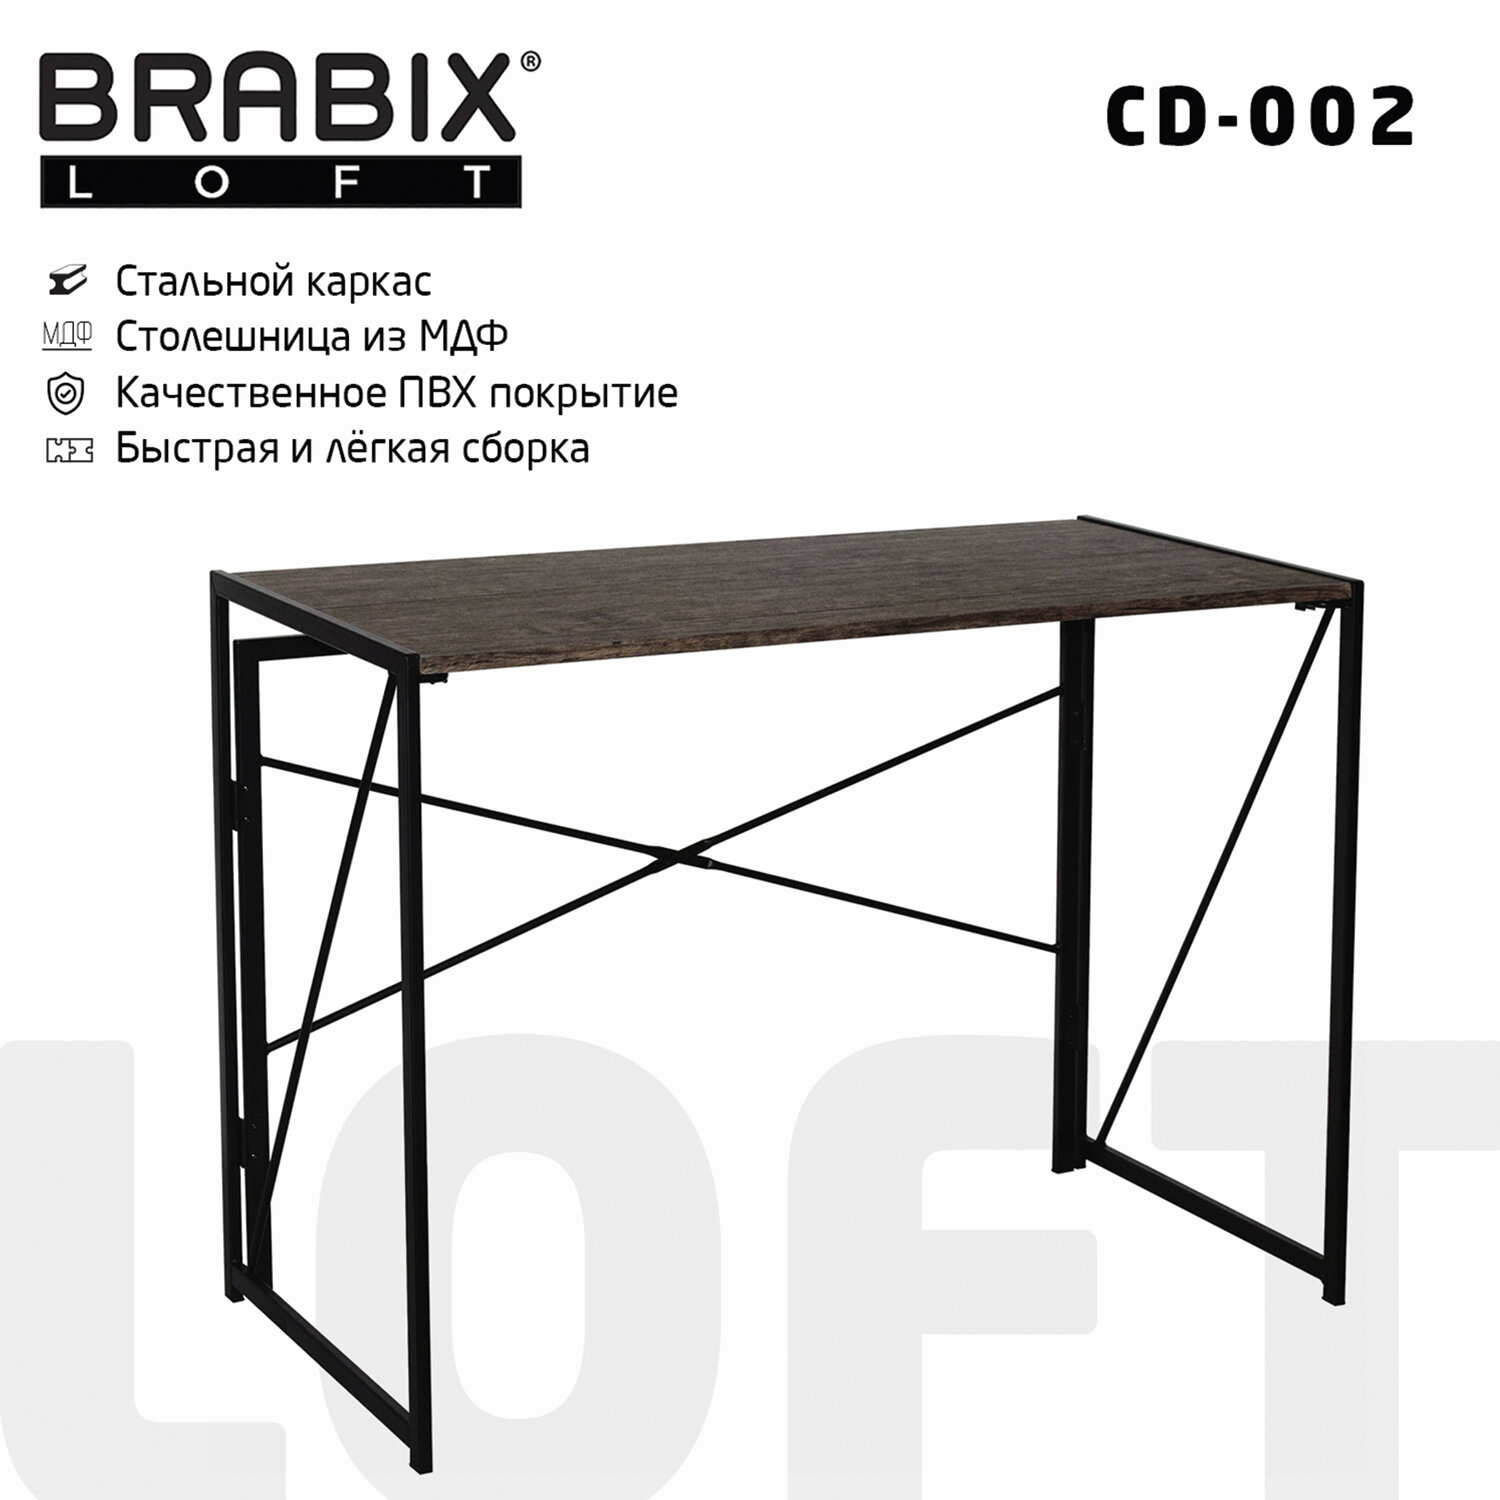 Стол компьютерный Brabix Loft CD-002